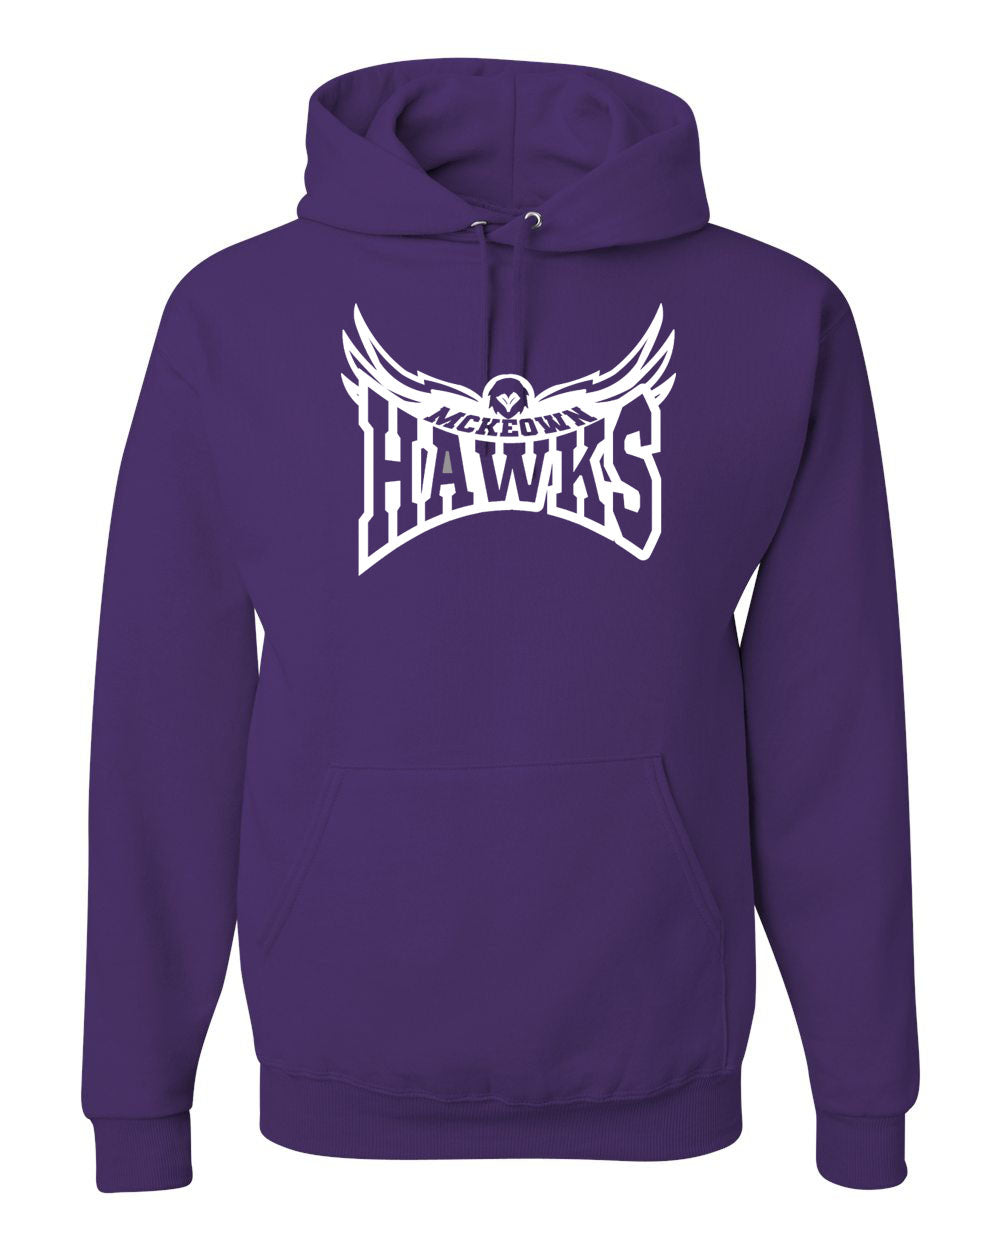 Hampton Hawk Hooded Sweatshirt